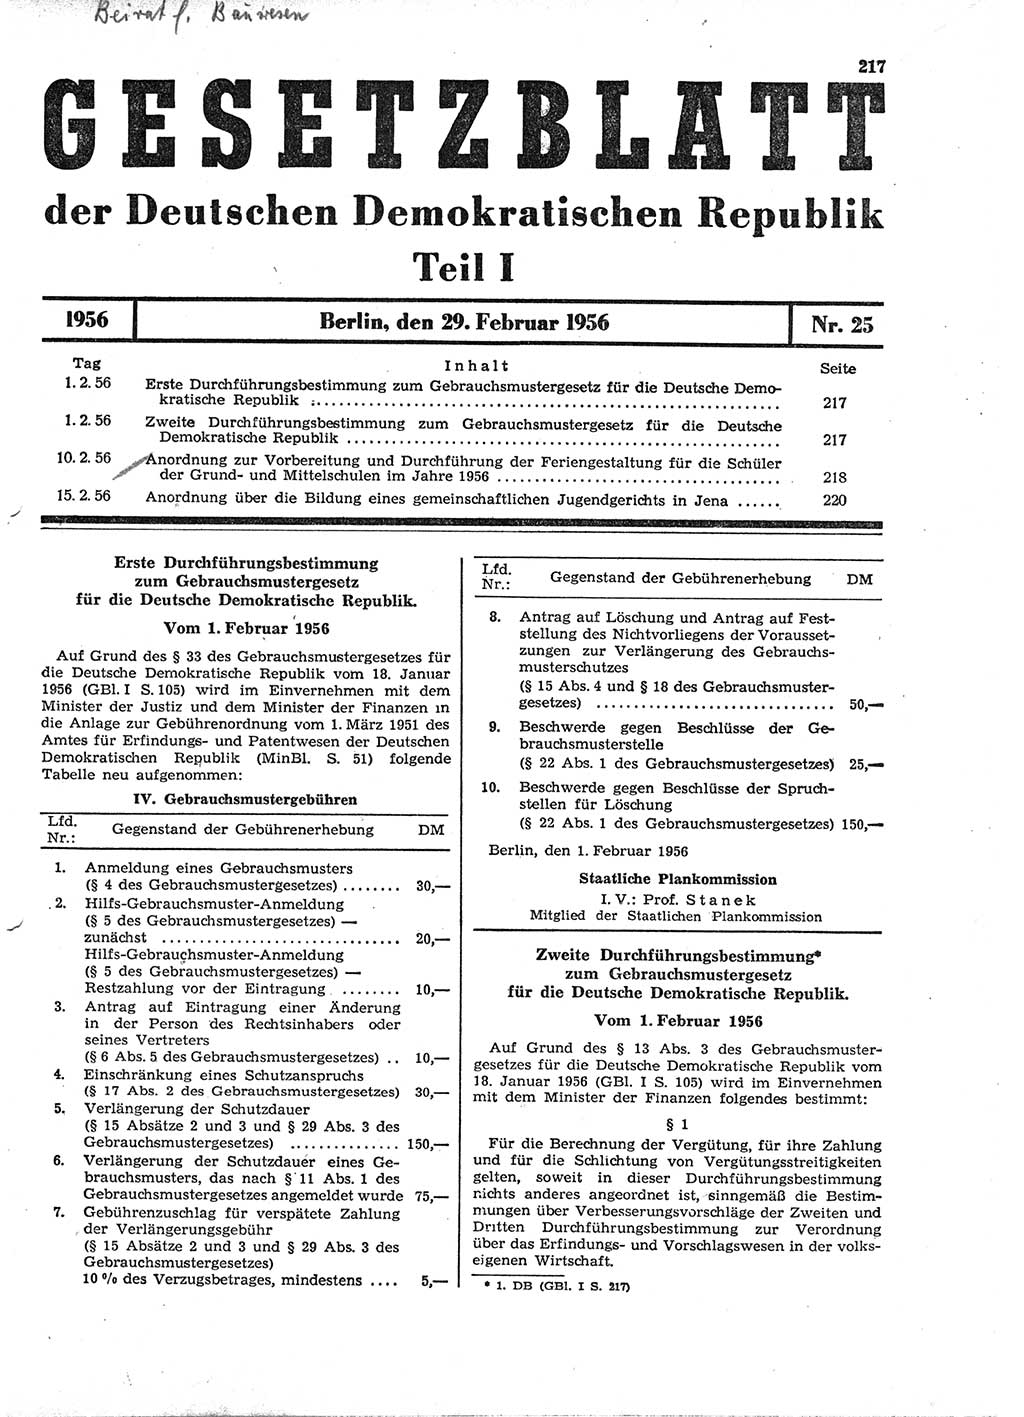 Gesetzblatt (GBl.) der Deutschen Demokratischen Republik (DDR) Teil Ⅰ 1956, Seite 217 (GBl. DDR Ⅰ 1956, S. 217)